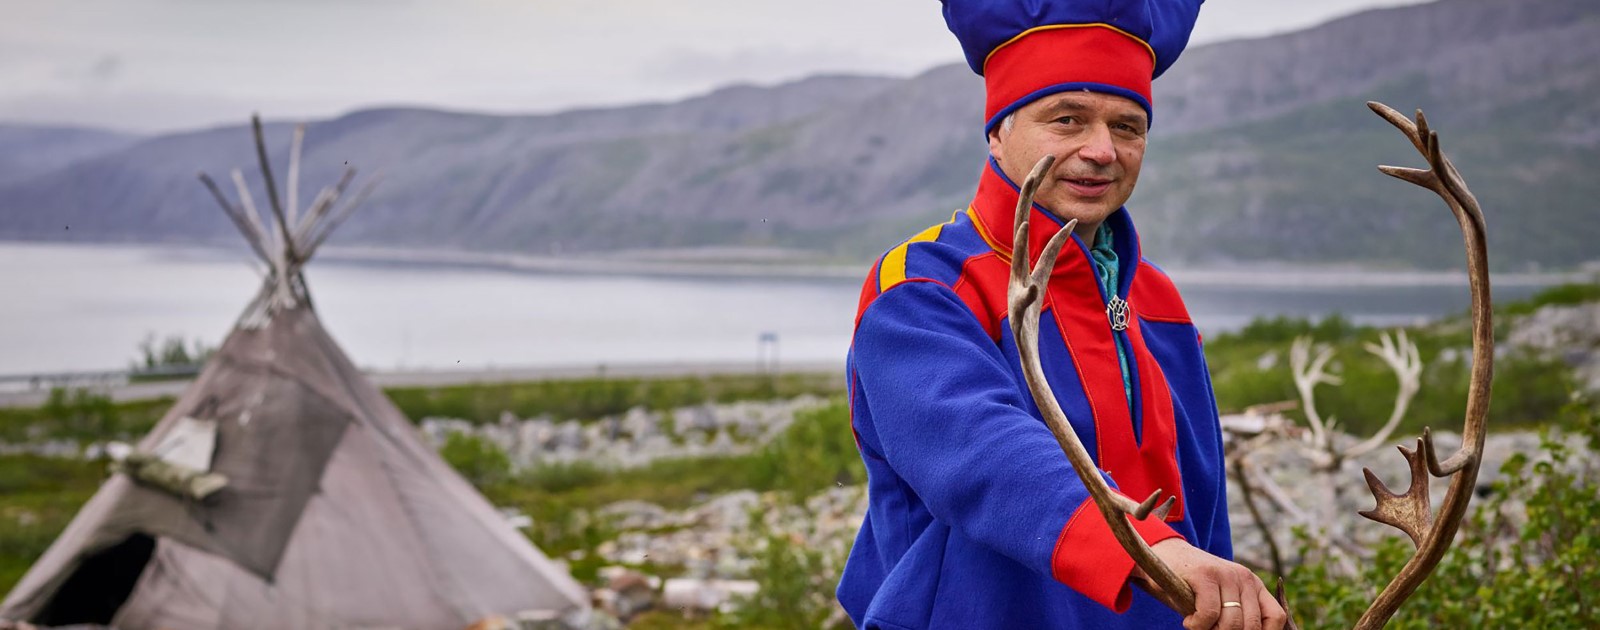 Cultures of Norway: The Sami people | Hurtigruten Norwegian ...